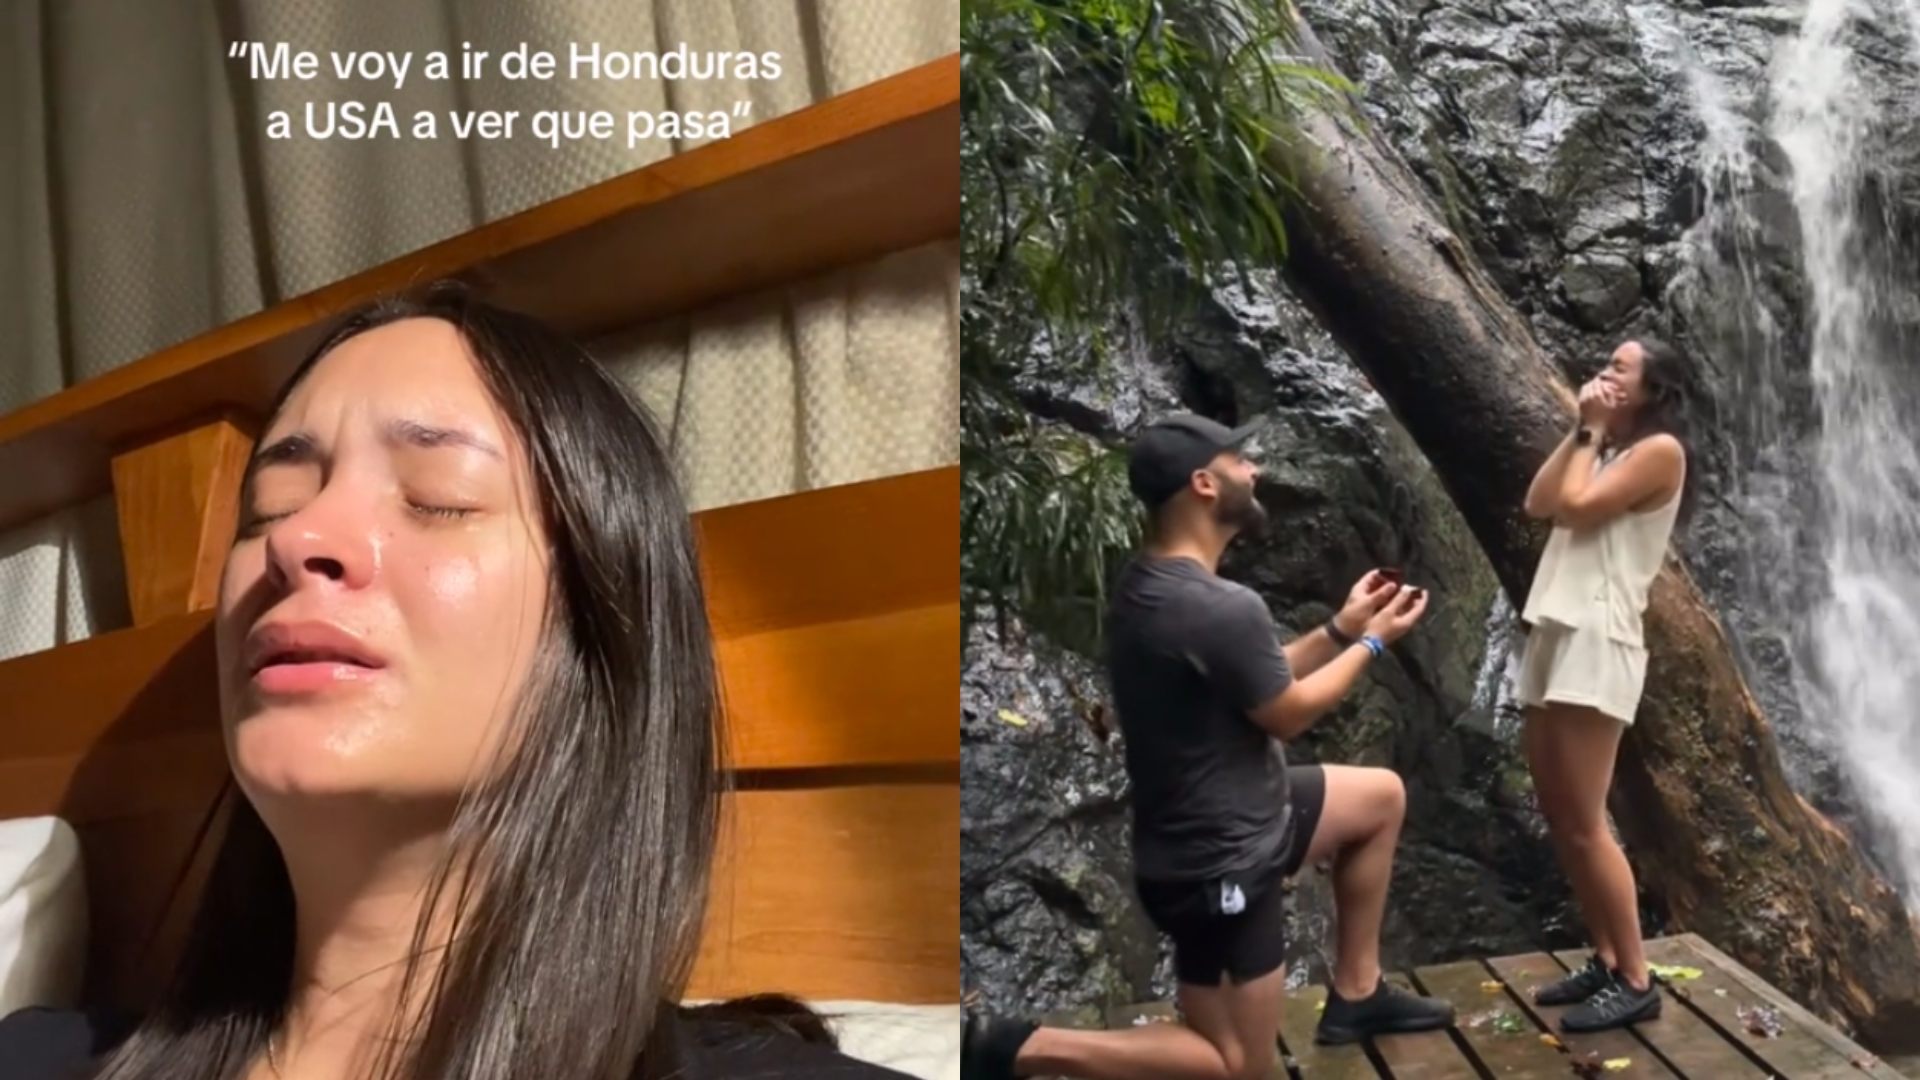 video propuesta de amor de gringo a hondureña